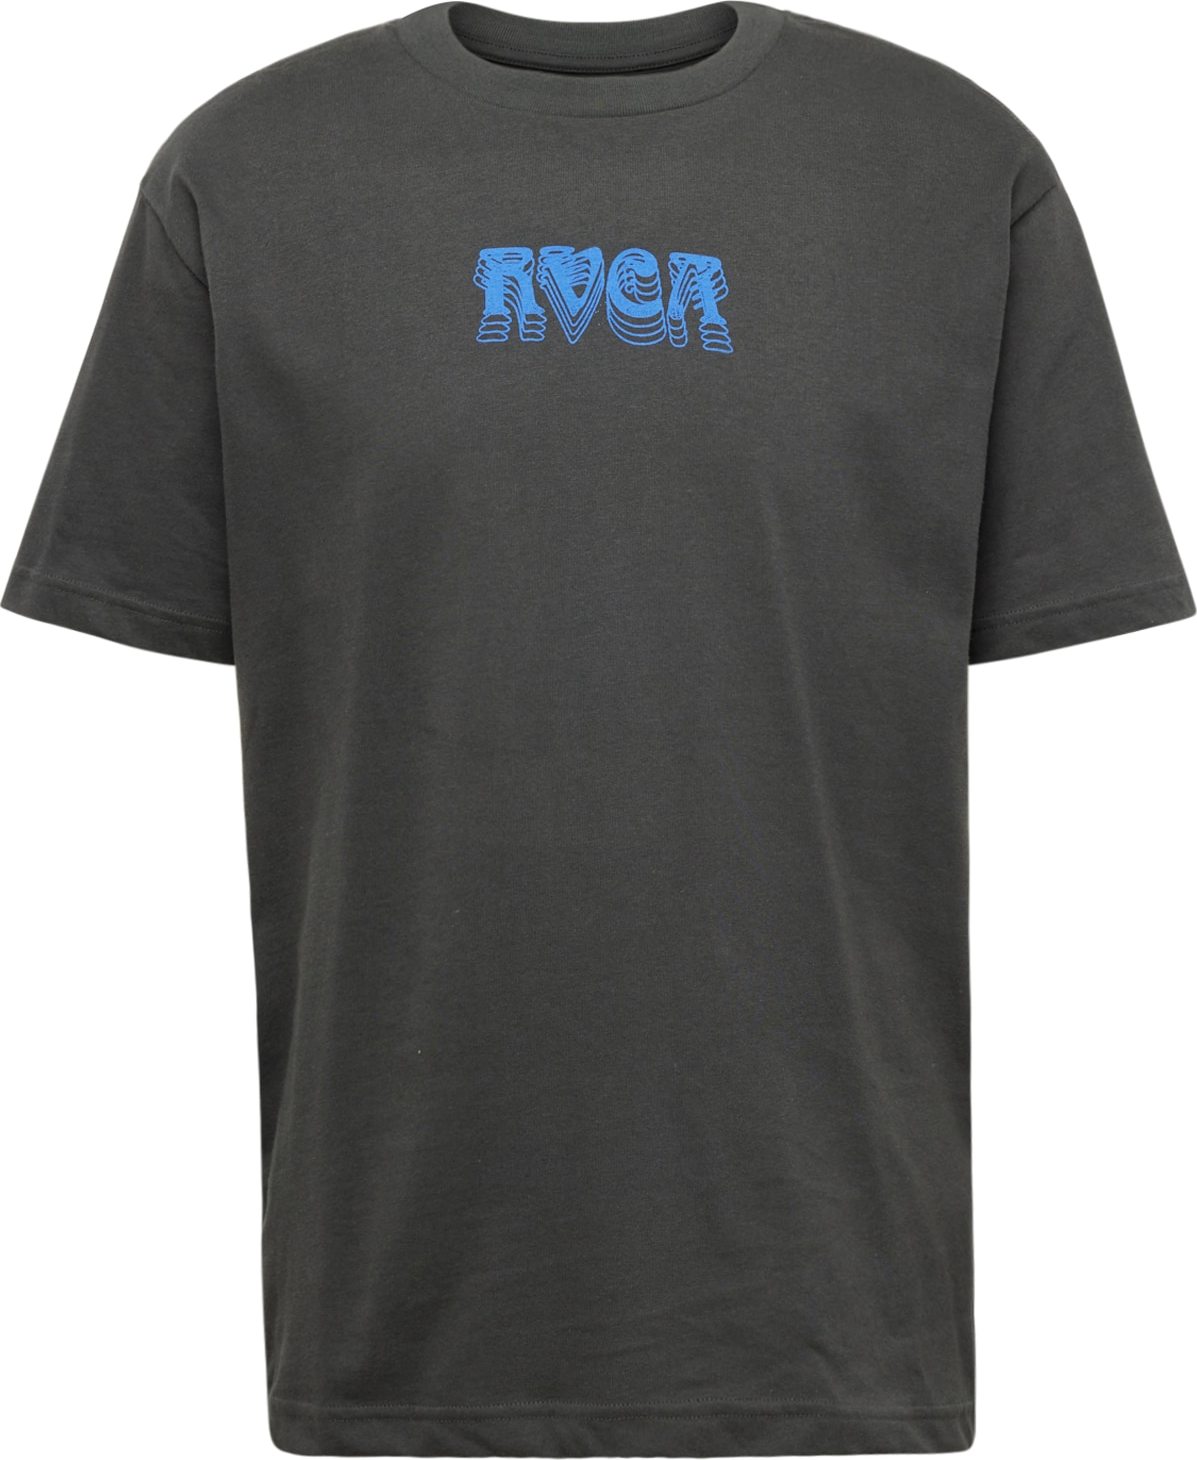 Tričko RVCA modrá / černá